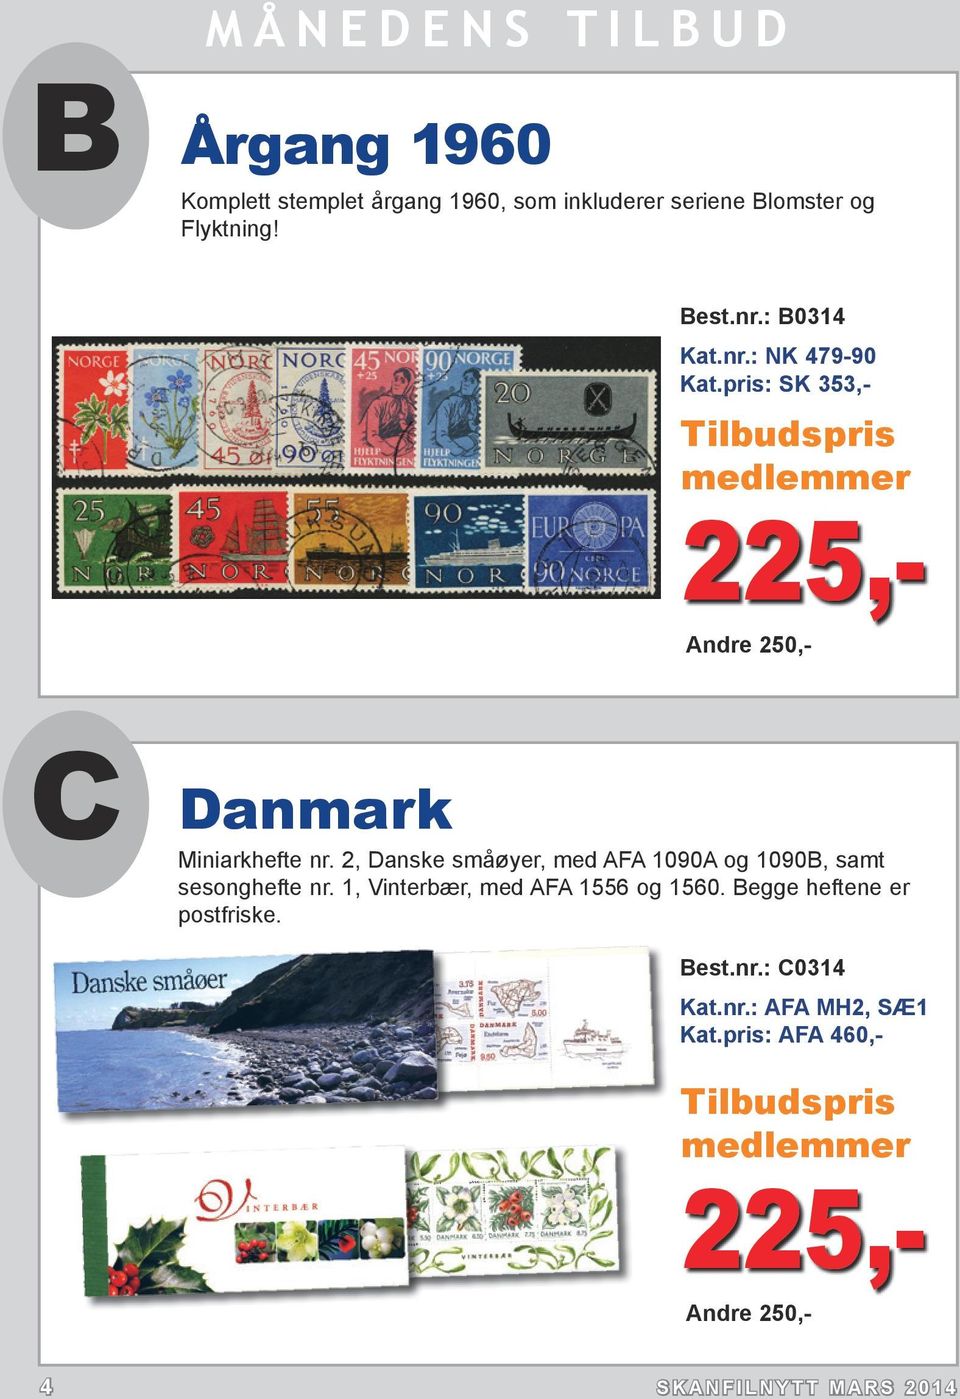 2, Danske småøyer, med AFA 1090A og 1090B, samt sesonghefte nr. 1, Vinterbær, med AFA 1556 og 1560.